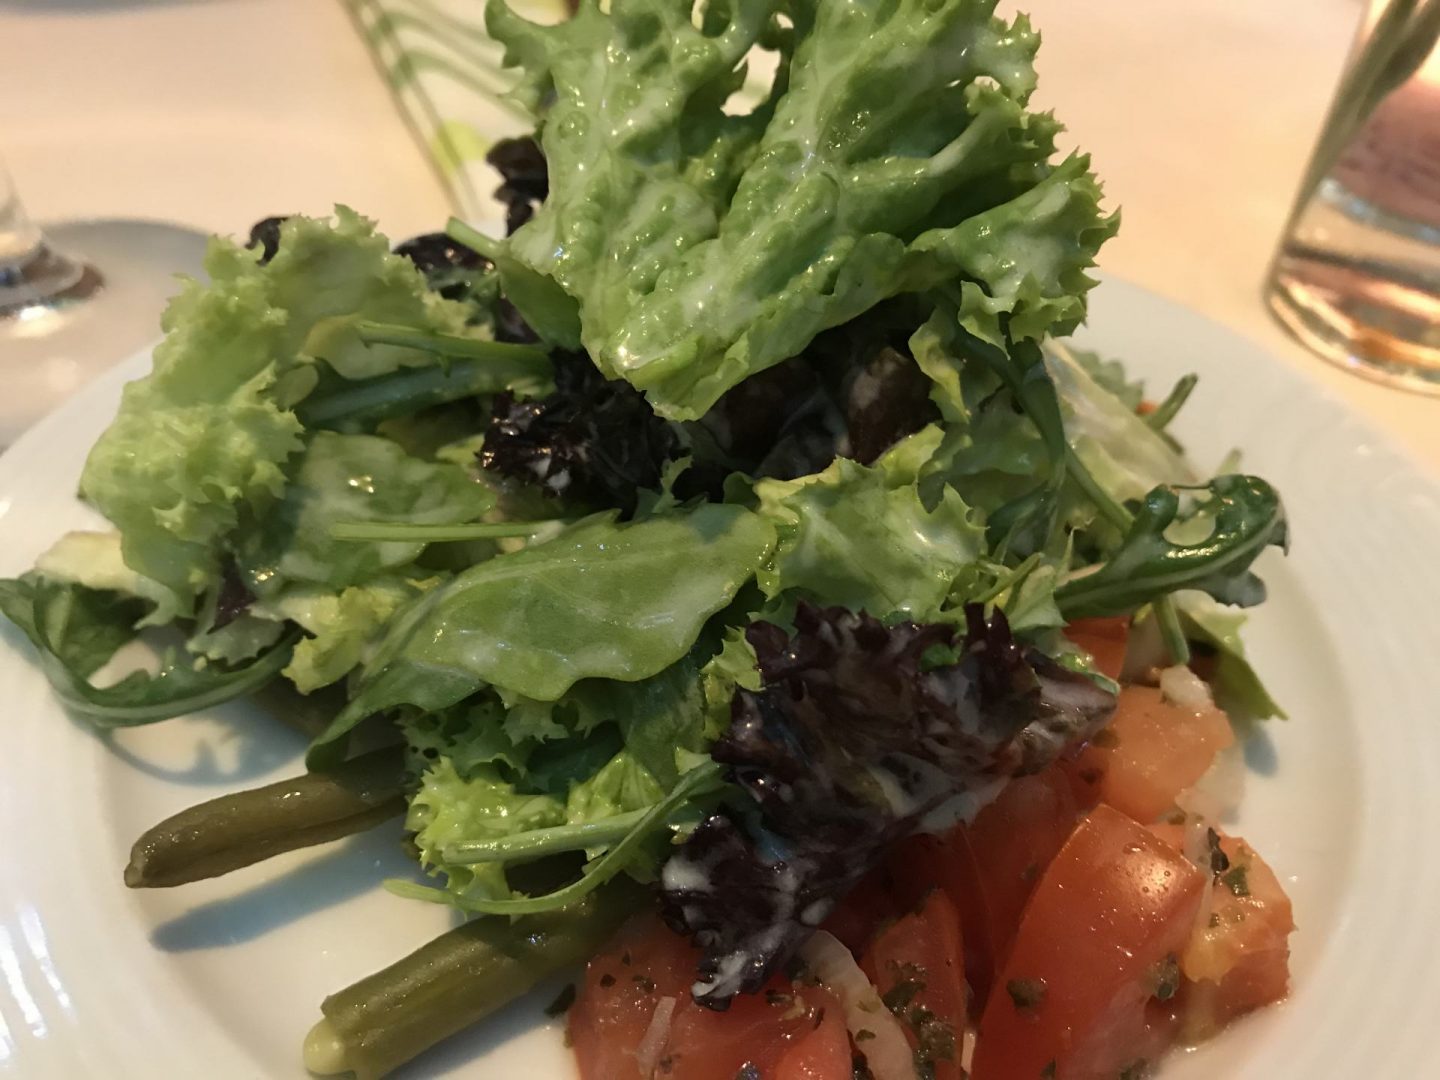 Erfahrung Bewertung Kritik Zur Traube Unkel Gemischter Salat Foodblog Sternestulle